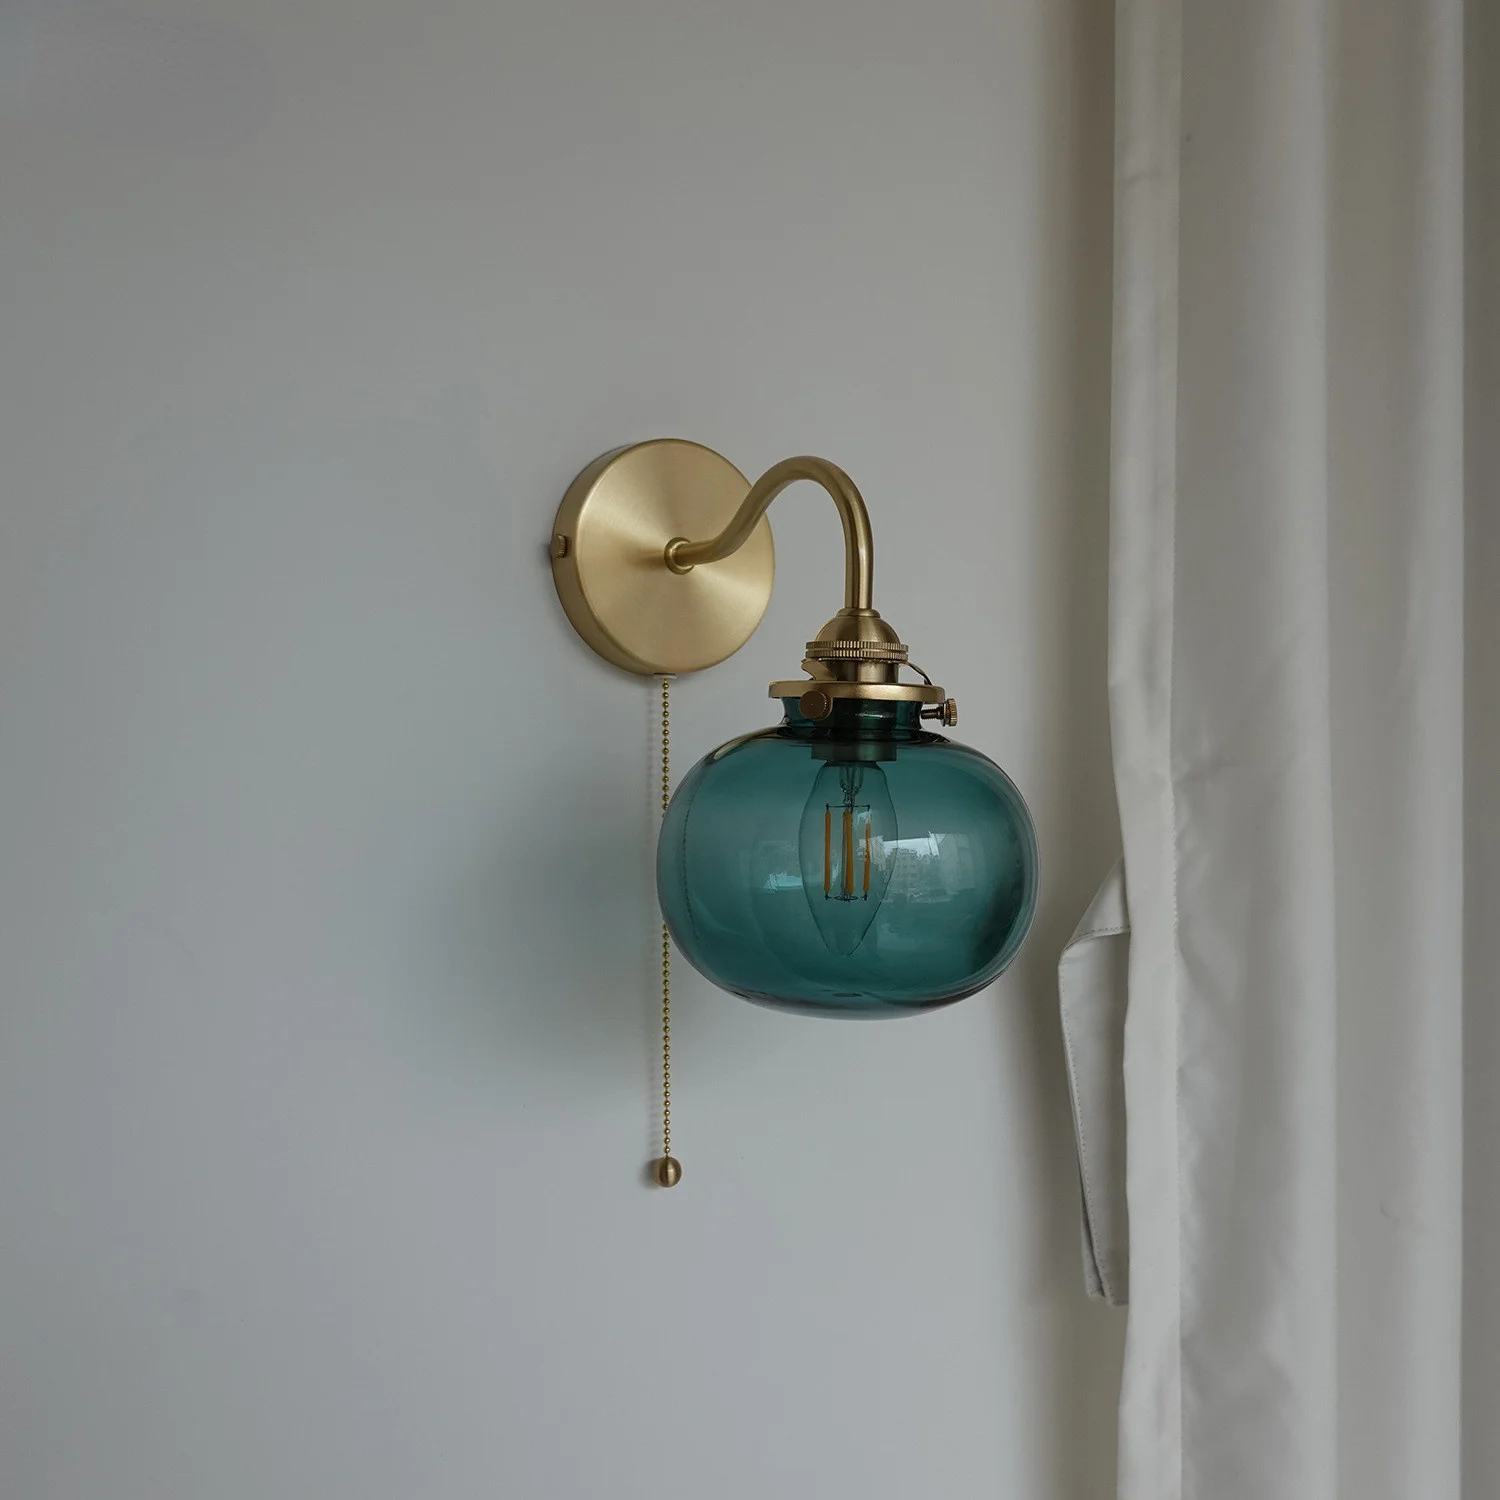 Настенный светильник в виде шара настенный переключатель для дома